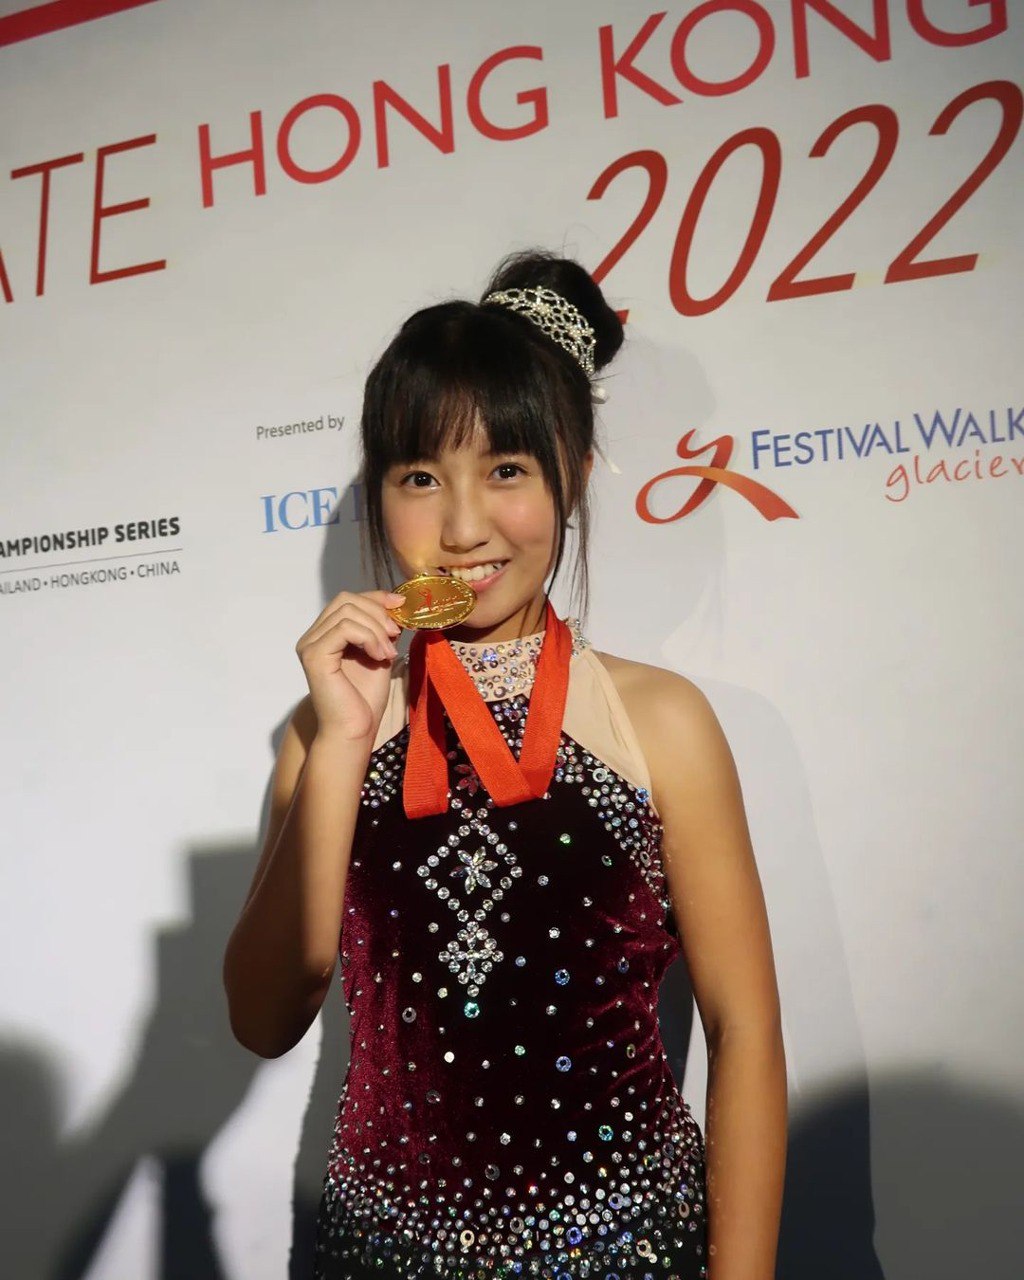 美心妹妹夺得「ISI香港滑冰赛2022」第二名。